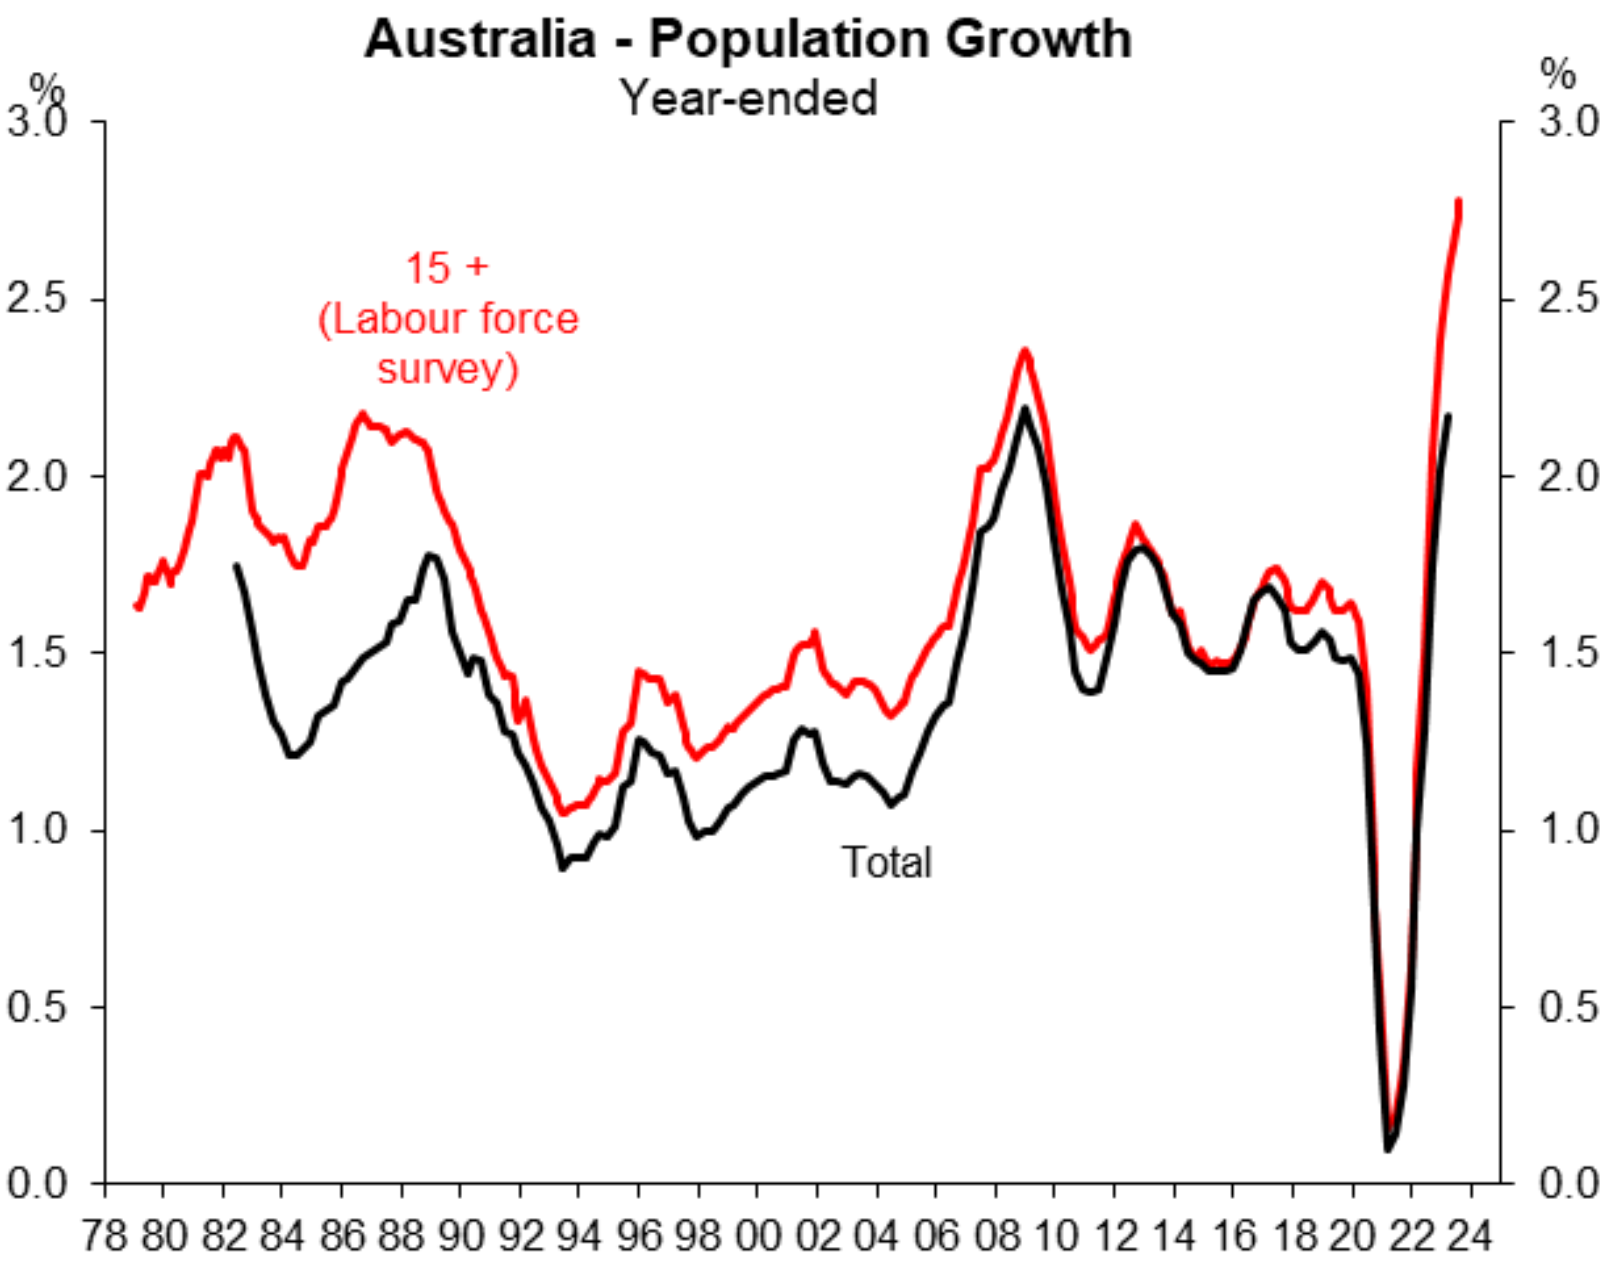 Population growth - Labour force survey